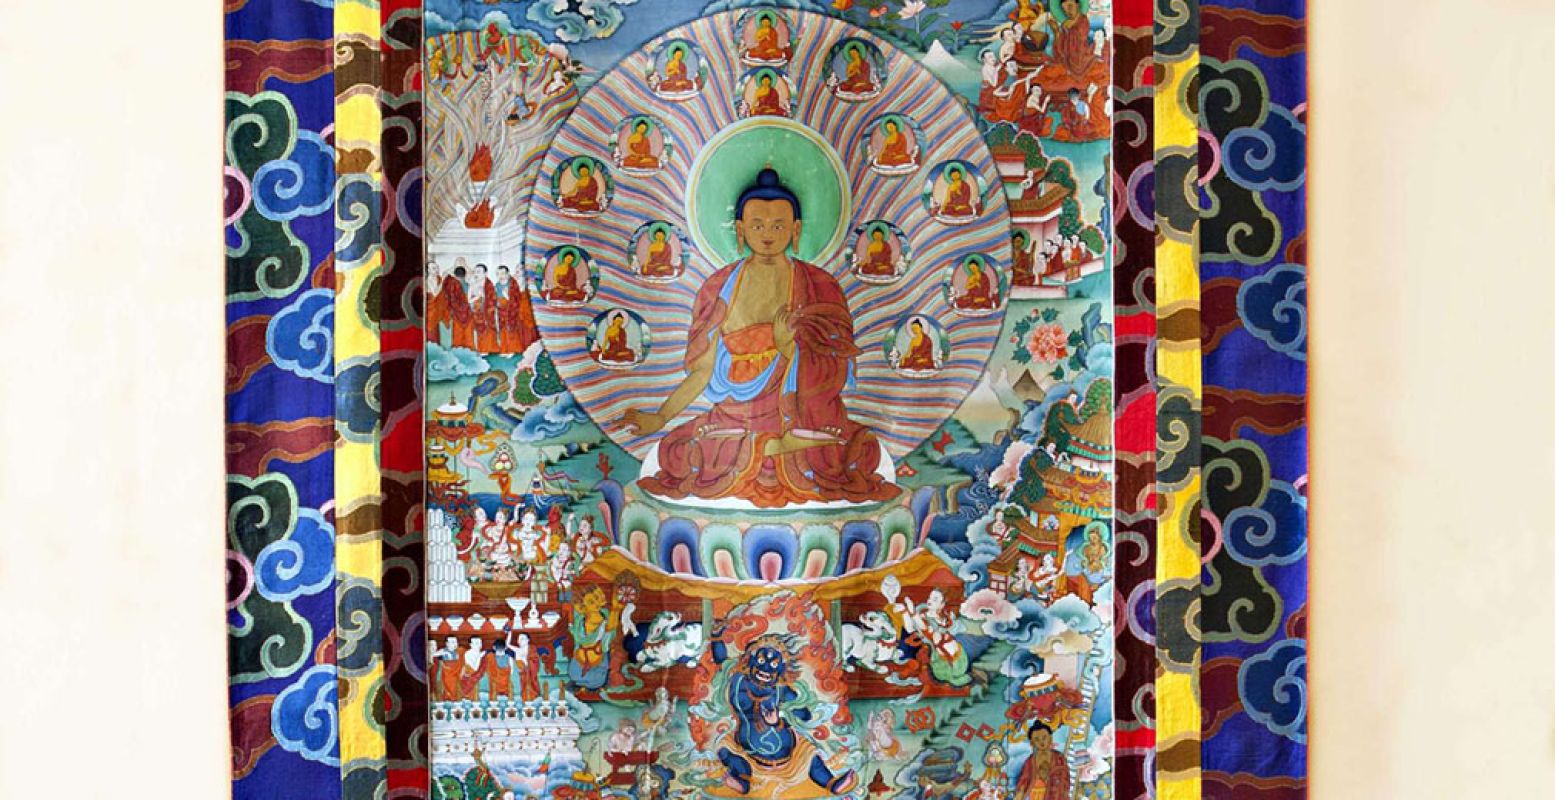 Thangka: levensscène van de Boeddha, Tibet, 19de eeuw, 213,4 Ã— 153 cm. Speciaal voor deze tentoonstelling uitgeleend uit de persoonlijke bezittingen van Zijne Heiligheid de Dalai Lama. Foto: Leo Hol.